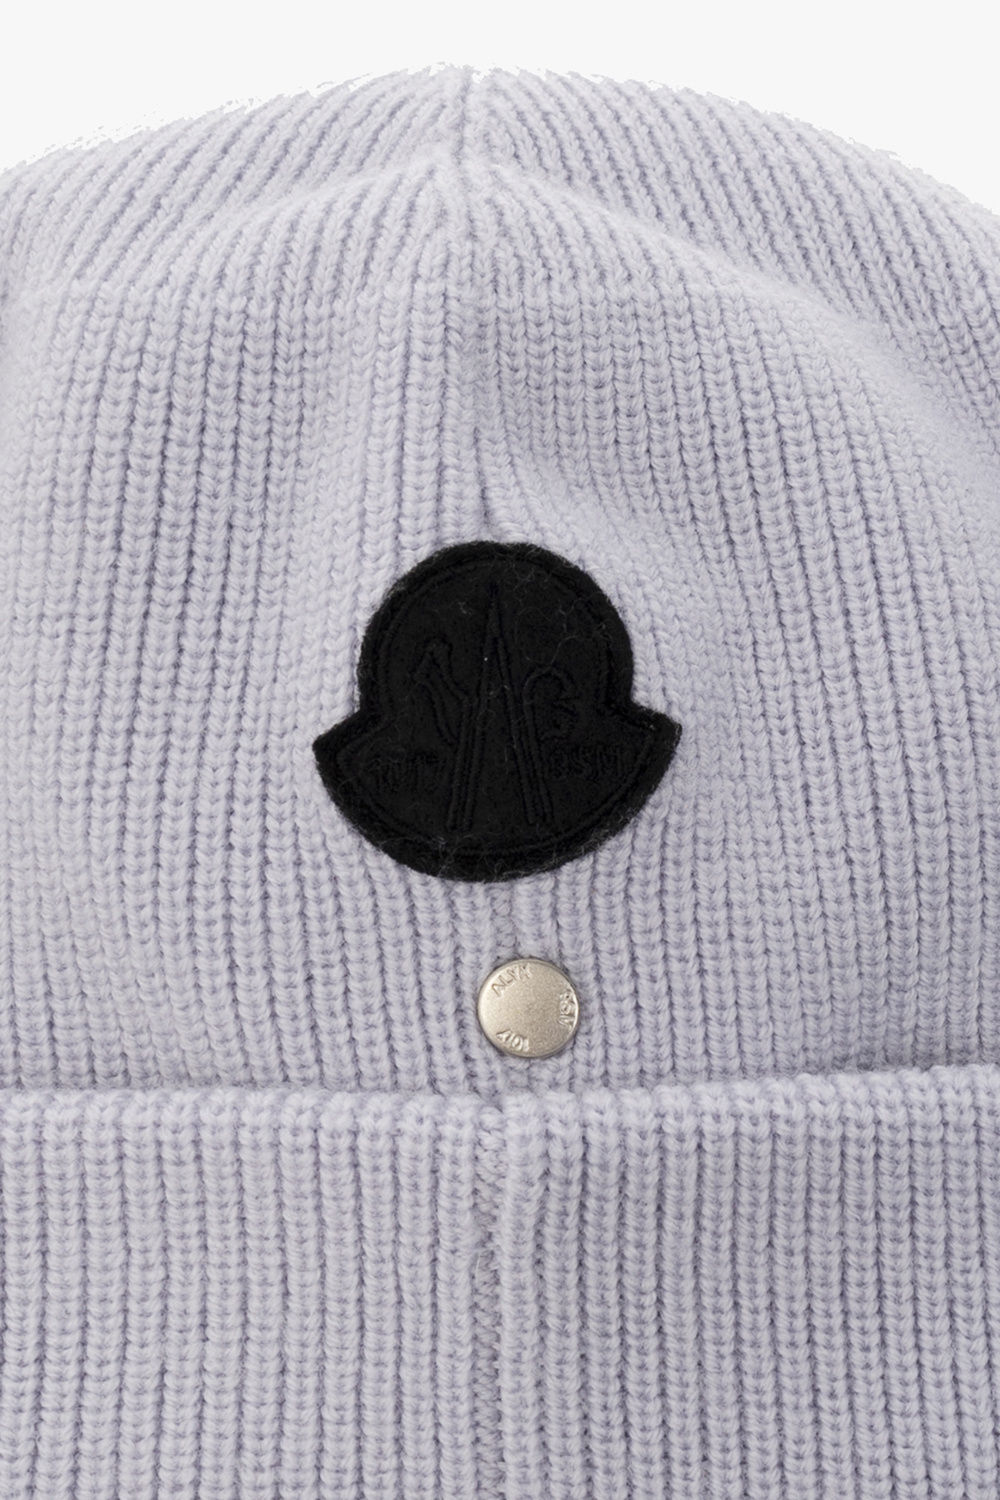 6 MONCLER 1017 ALYX 9SM Moncler Genius - intarsia-knit logo beanie